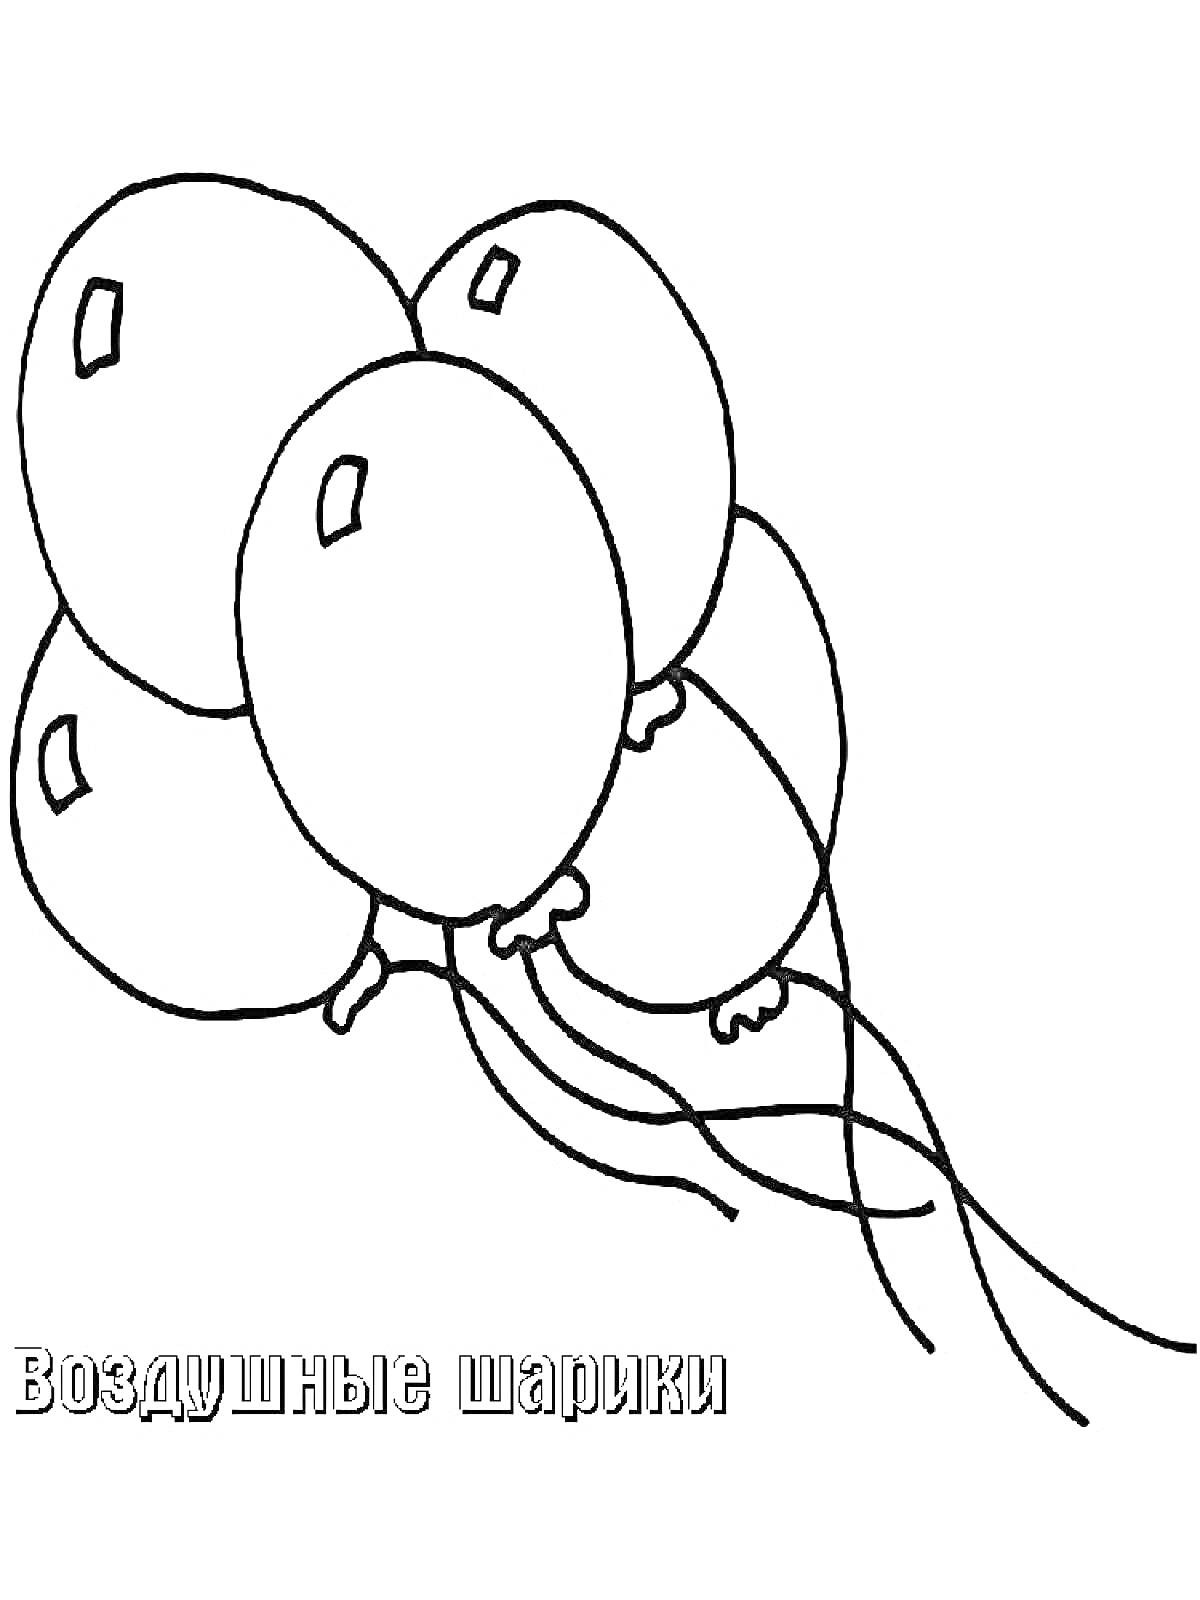 Раскраска Воздушные шарики - пять шариков с хвостиками